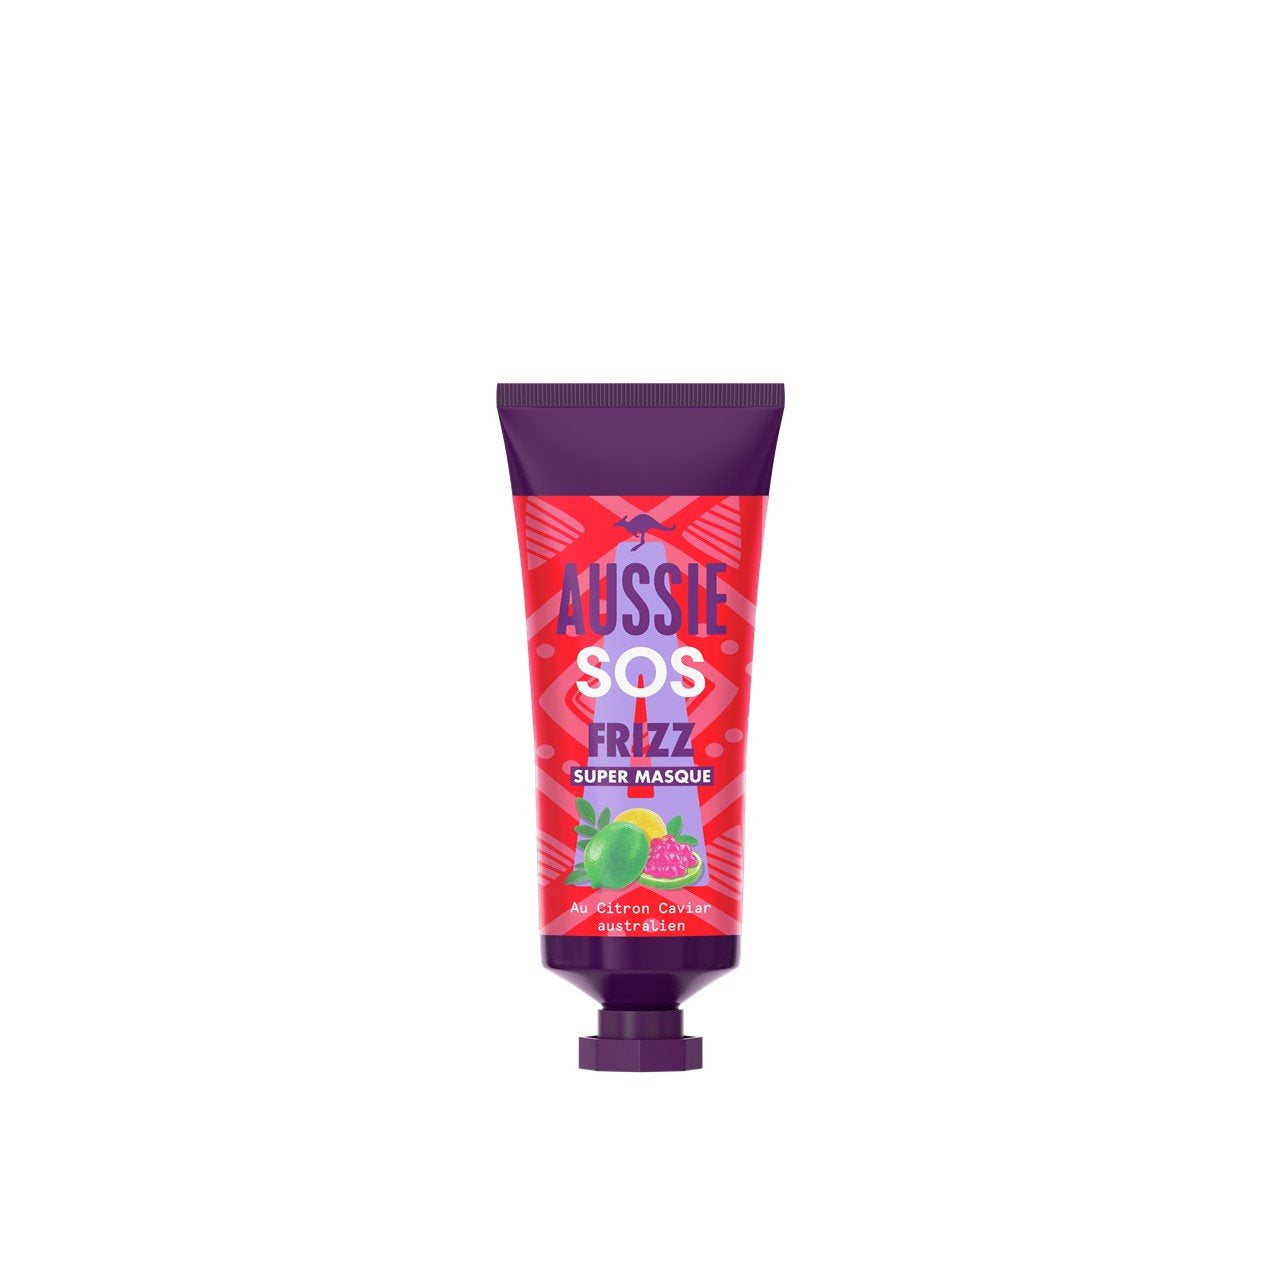 Aussie SOS Frizz Super Masque Traitement Shot 25 ml